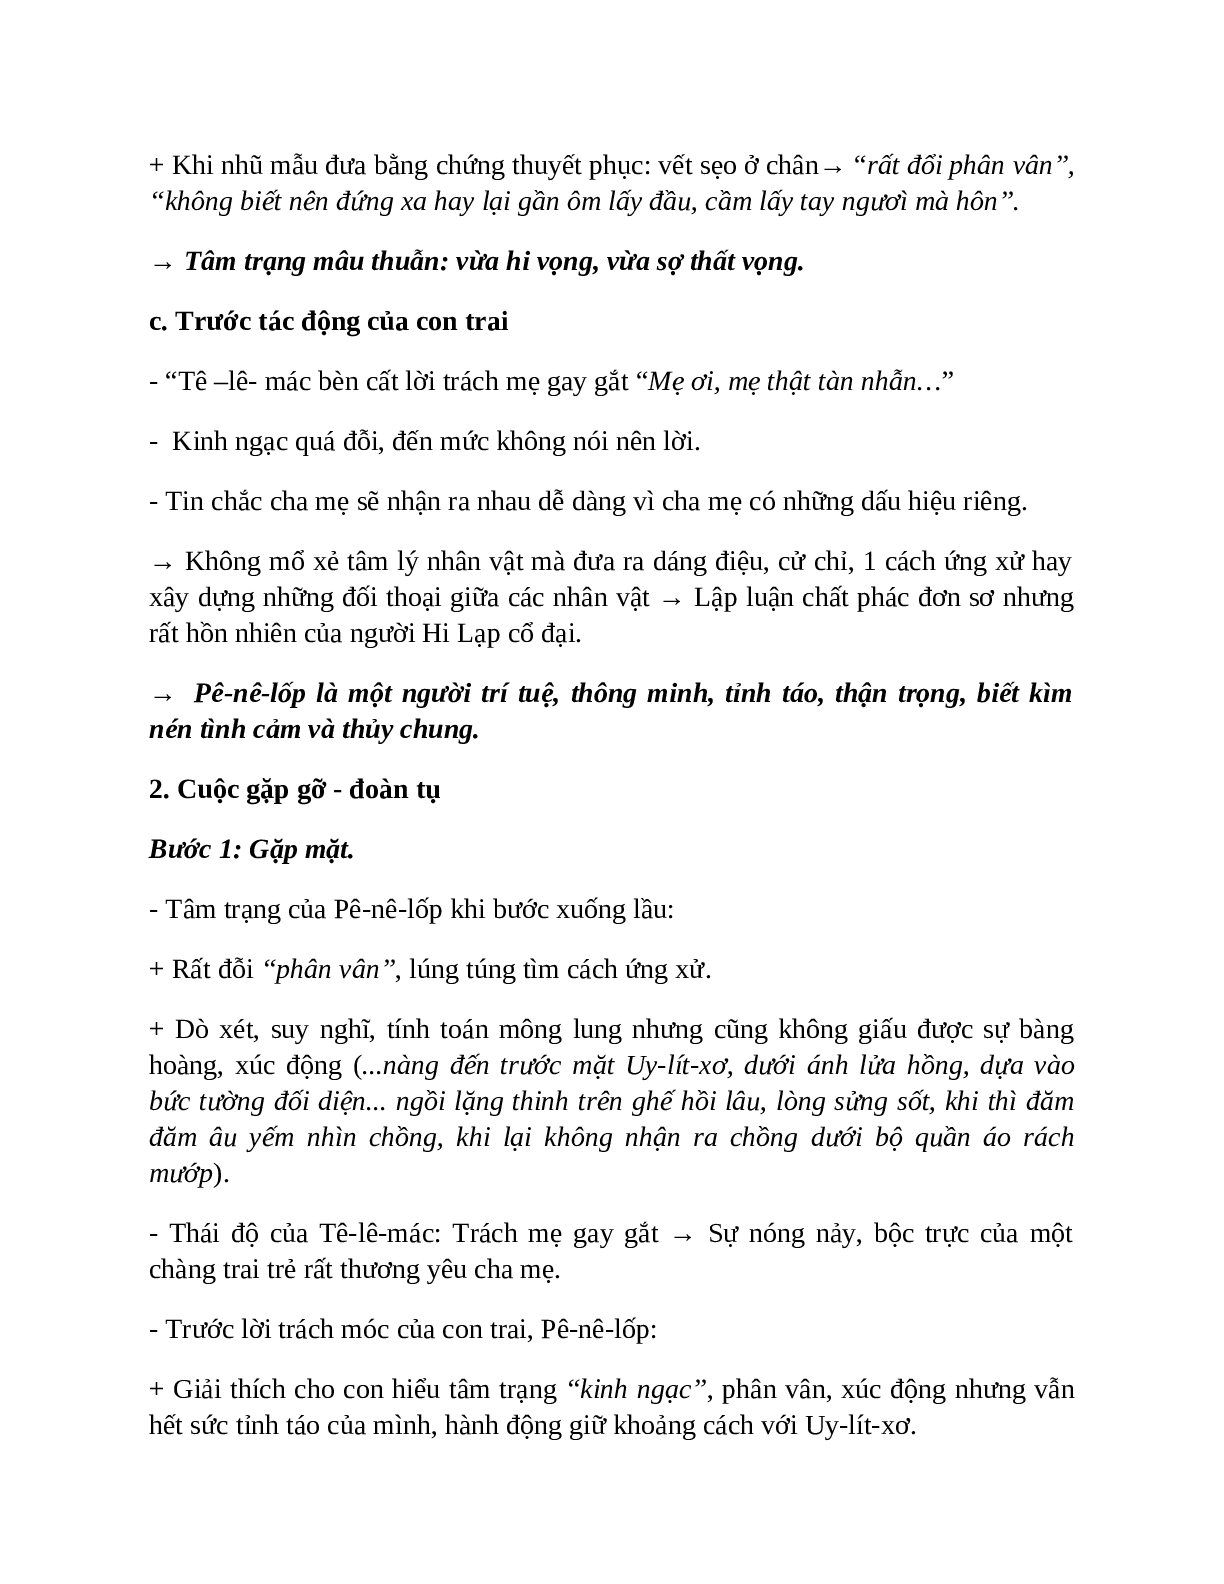 Sơ đồ tư duy bài Uy-lít-xơ trở về dễ nhớ, ngắn nhất - Ngữ văn lớp 10 (trang 4)